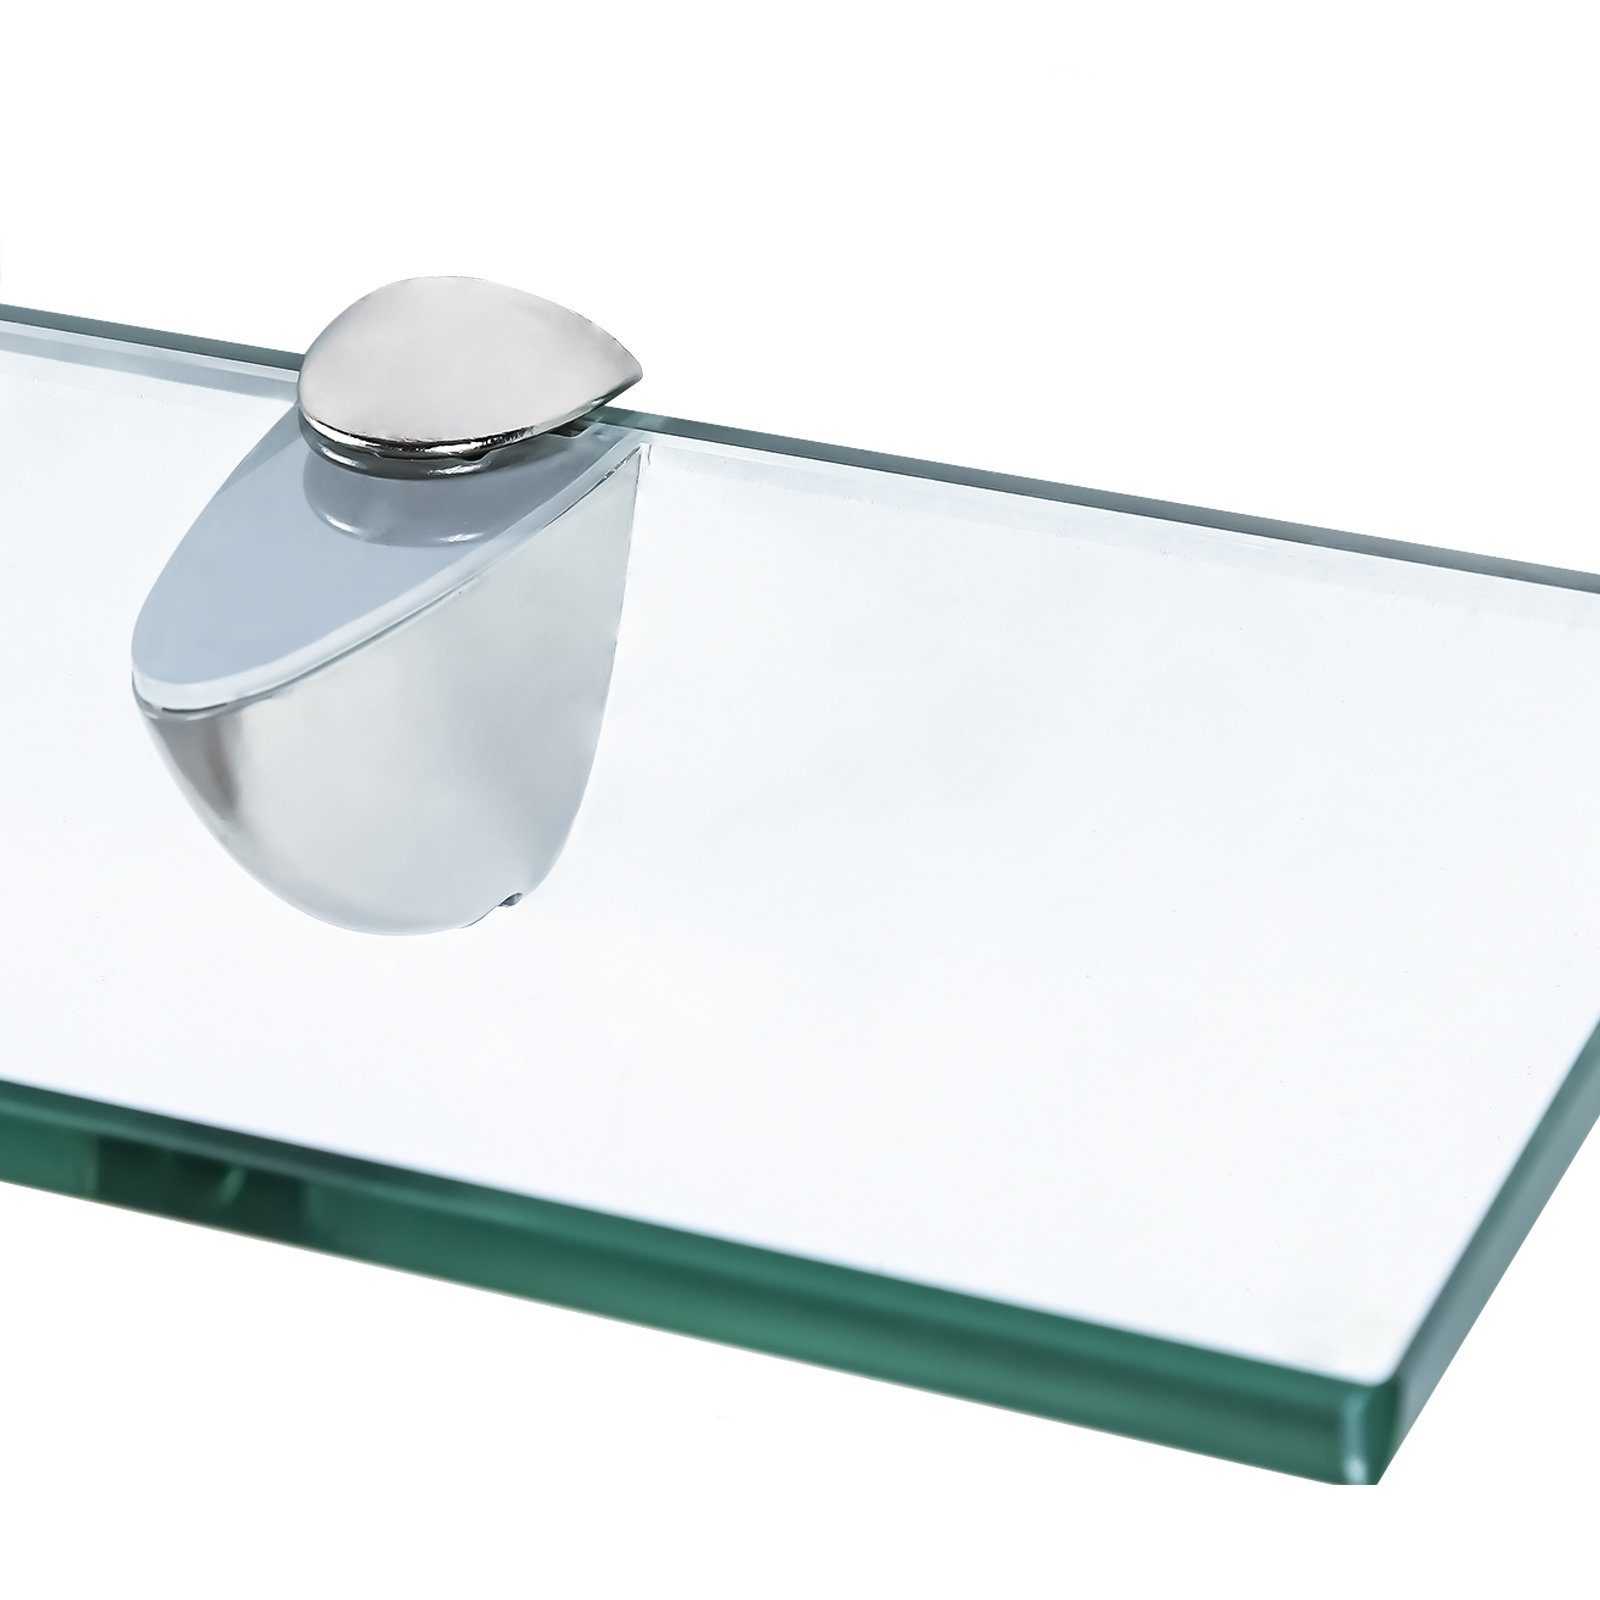 ideal cm für Glasablage Wandregal Klarglas 20x10x0.8 Glasregal Bad, Clanmacy Dusche